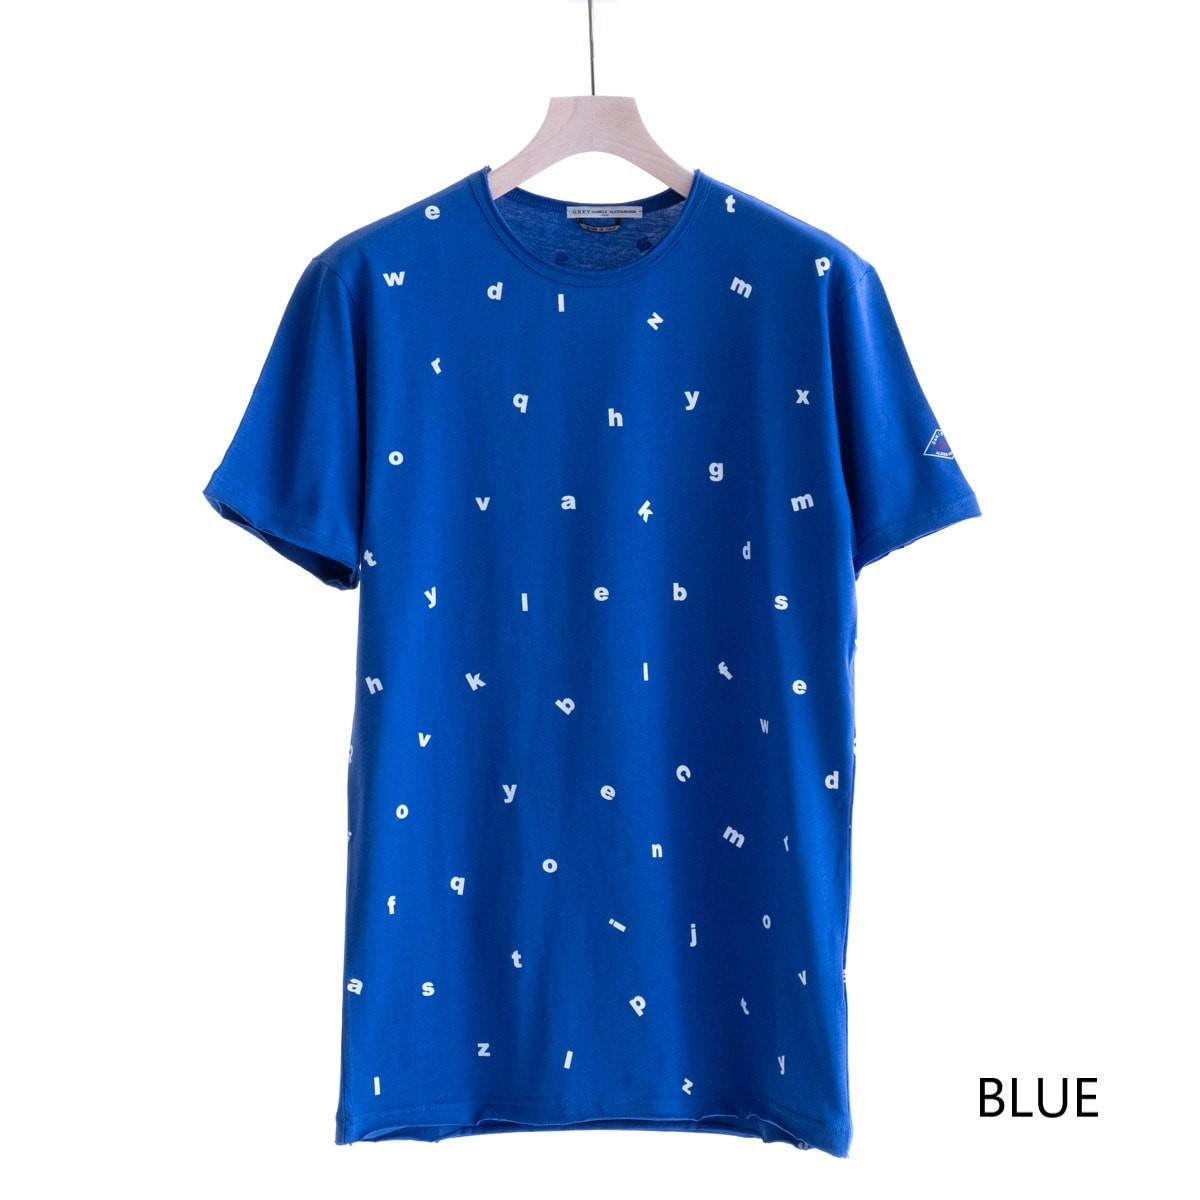 DANIELE ALESSANDRINI MAGLIA FILI ST 最安値に挑戦 2色 BLUE 全国どこでも送料無料 BLACK 211-63941003 カットソー ダニエレアレッサンドリーニ メンズ 送料無料 英文字 レタリング Tシャツ イタリア